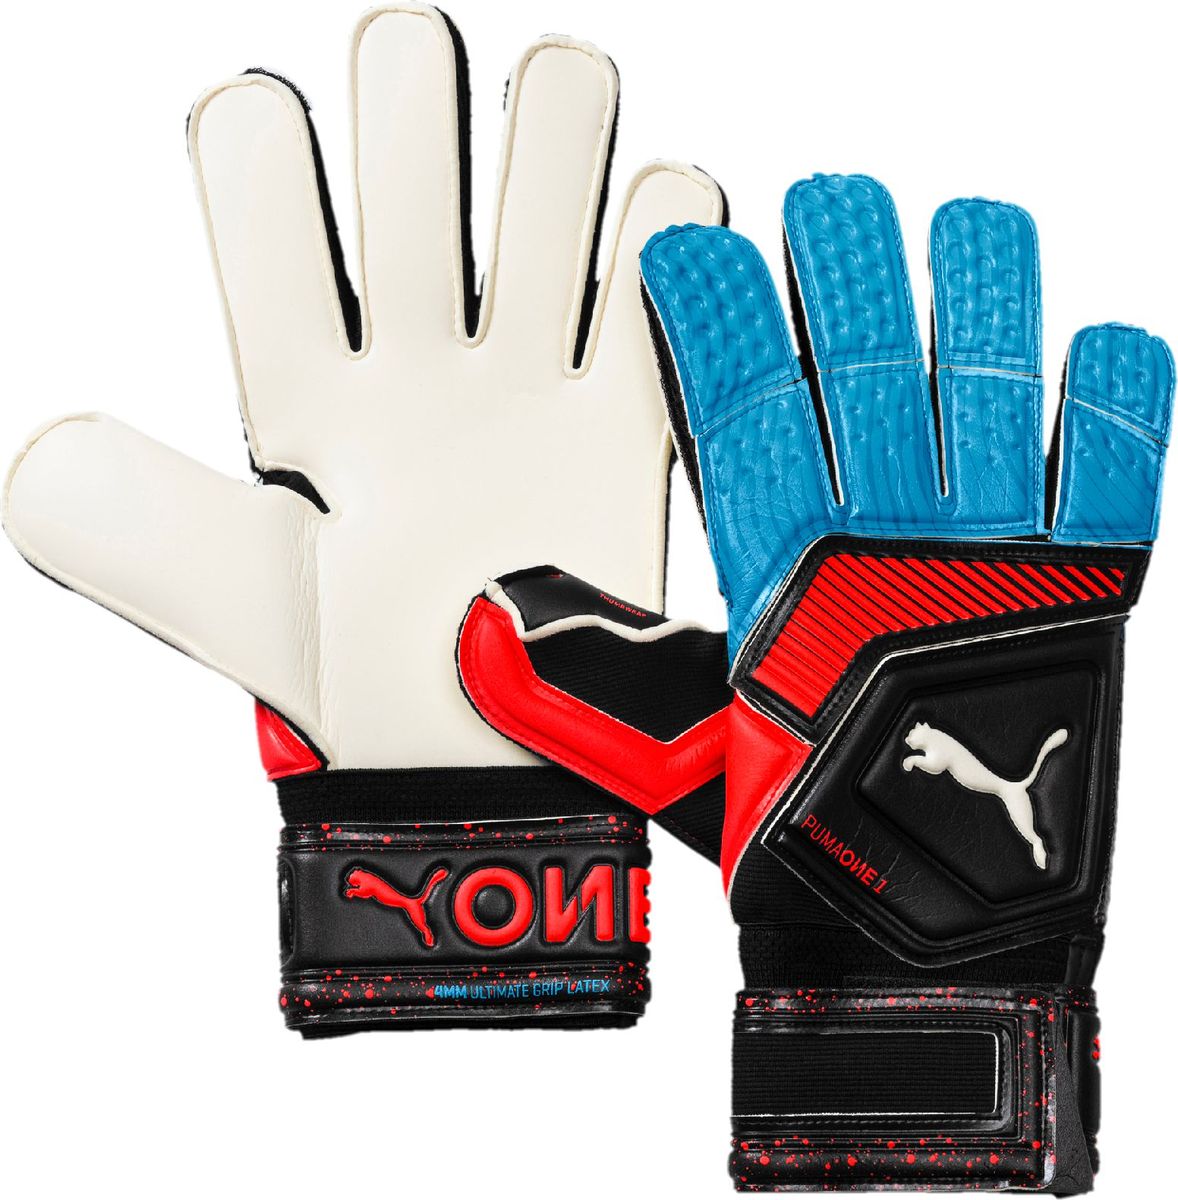 Перчатки вратарские Puma One Grip 1 RC, 04147021, черный, синий, размер 7,5